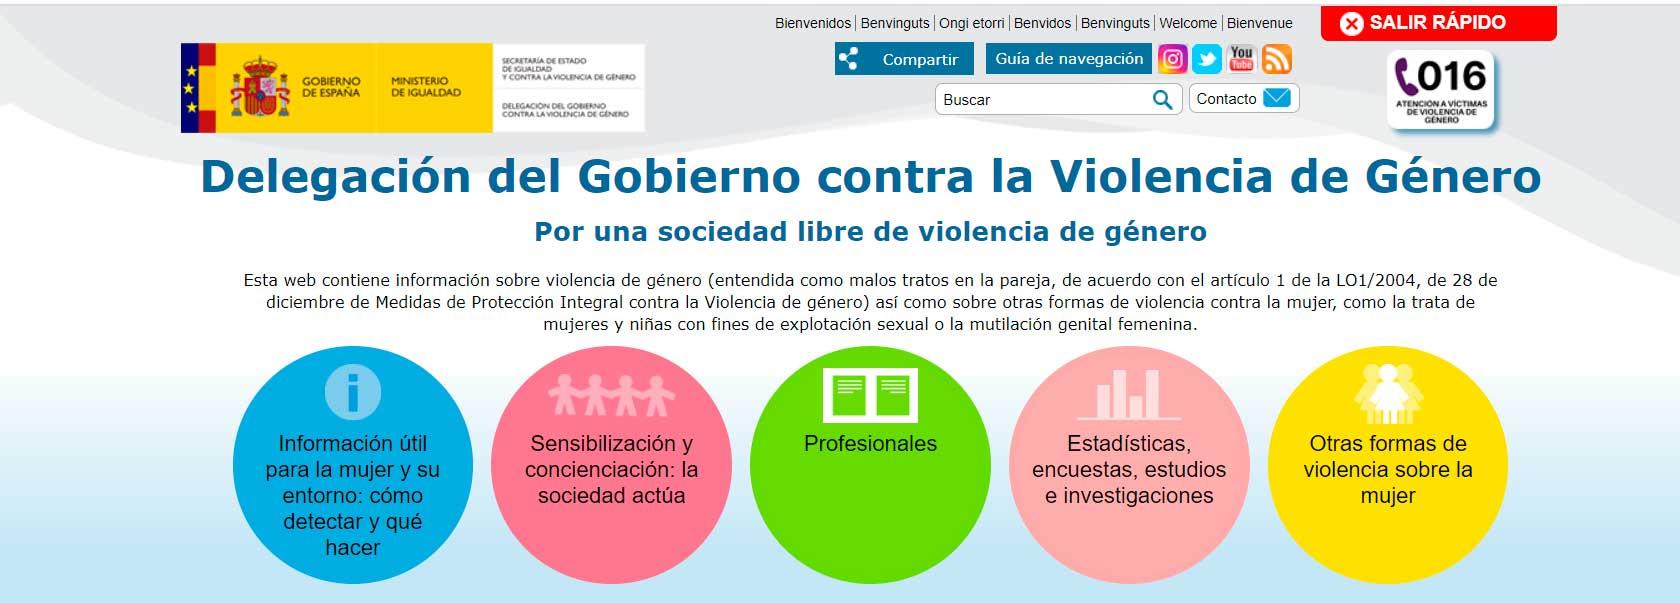 Webs para emergencias - Violencia de género